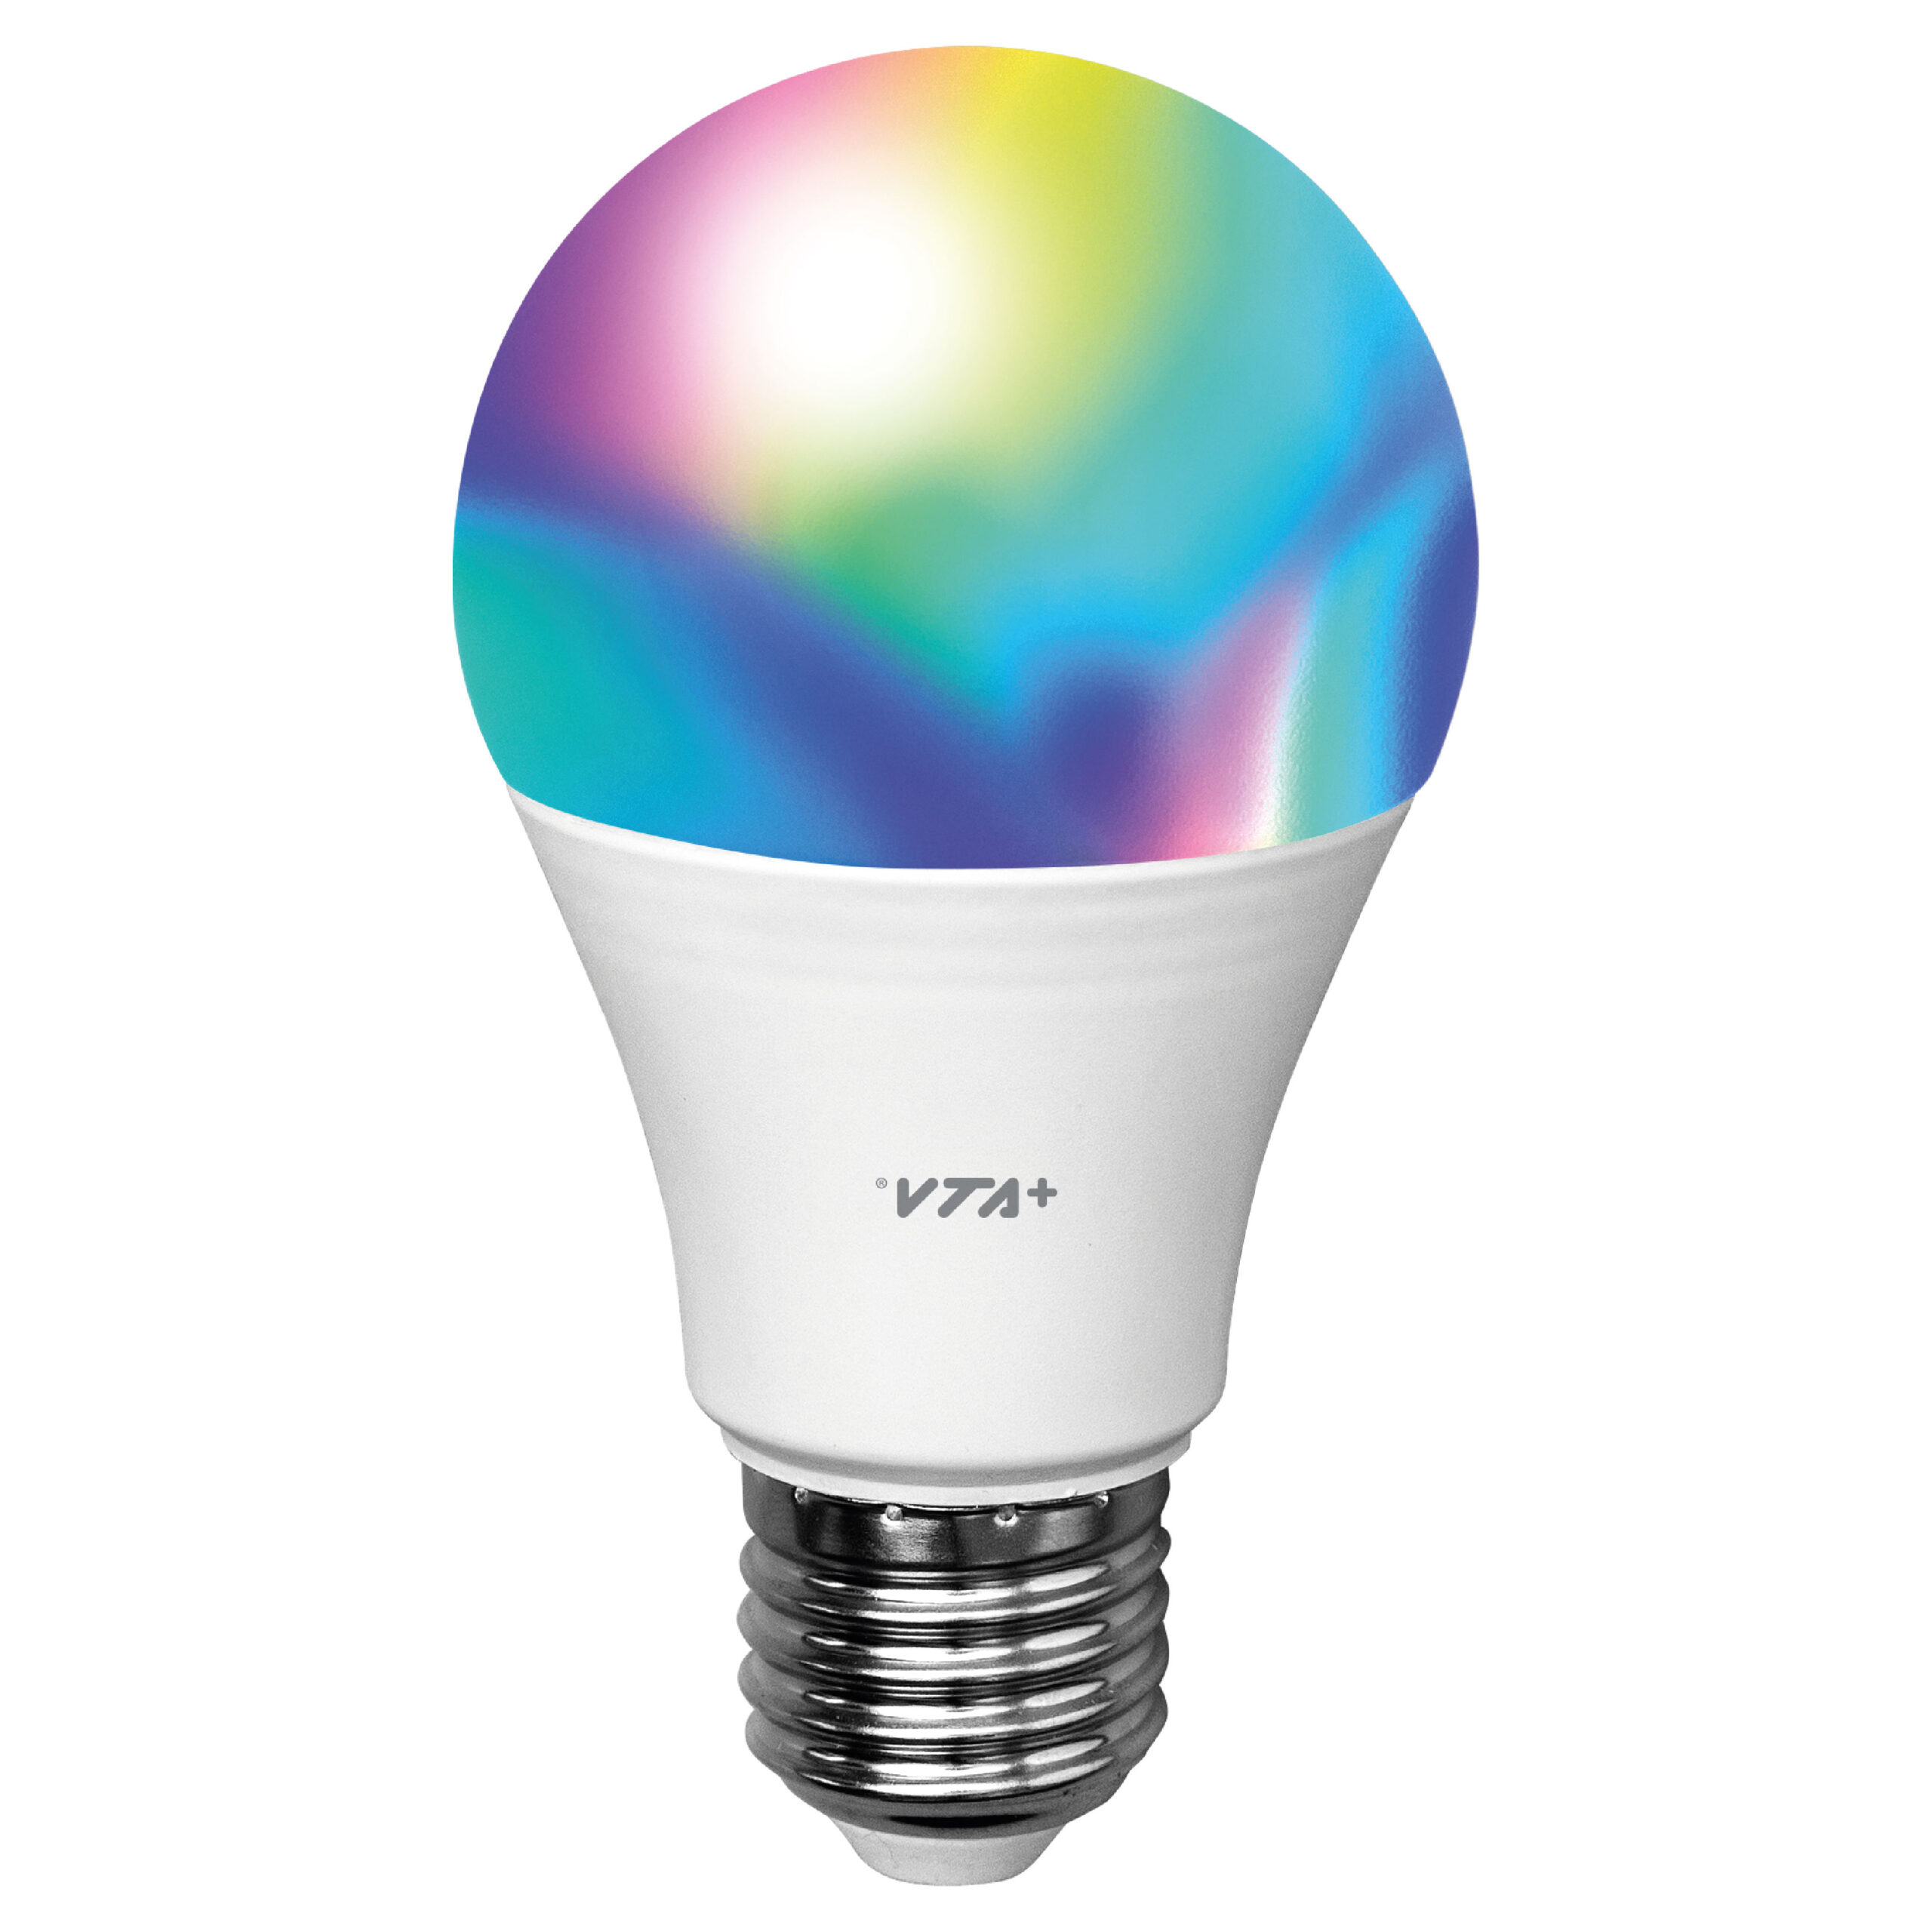 VTA Bombilla Inteligente LED RGB 9W E27